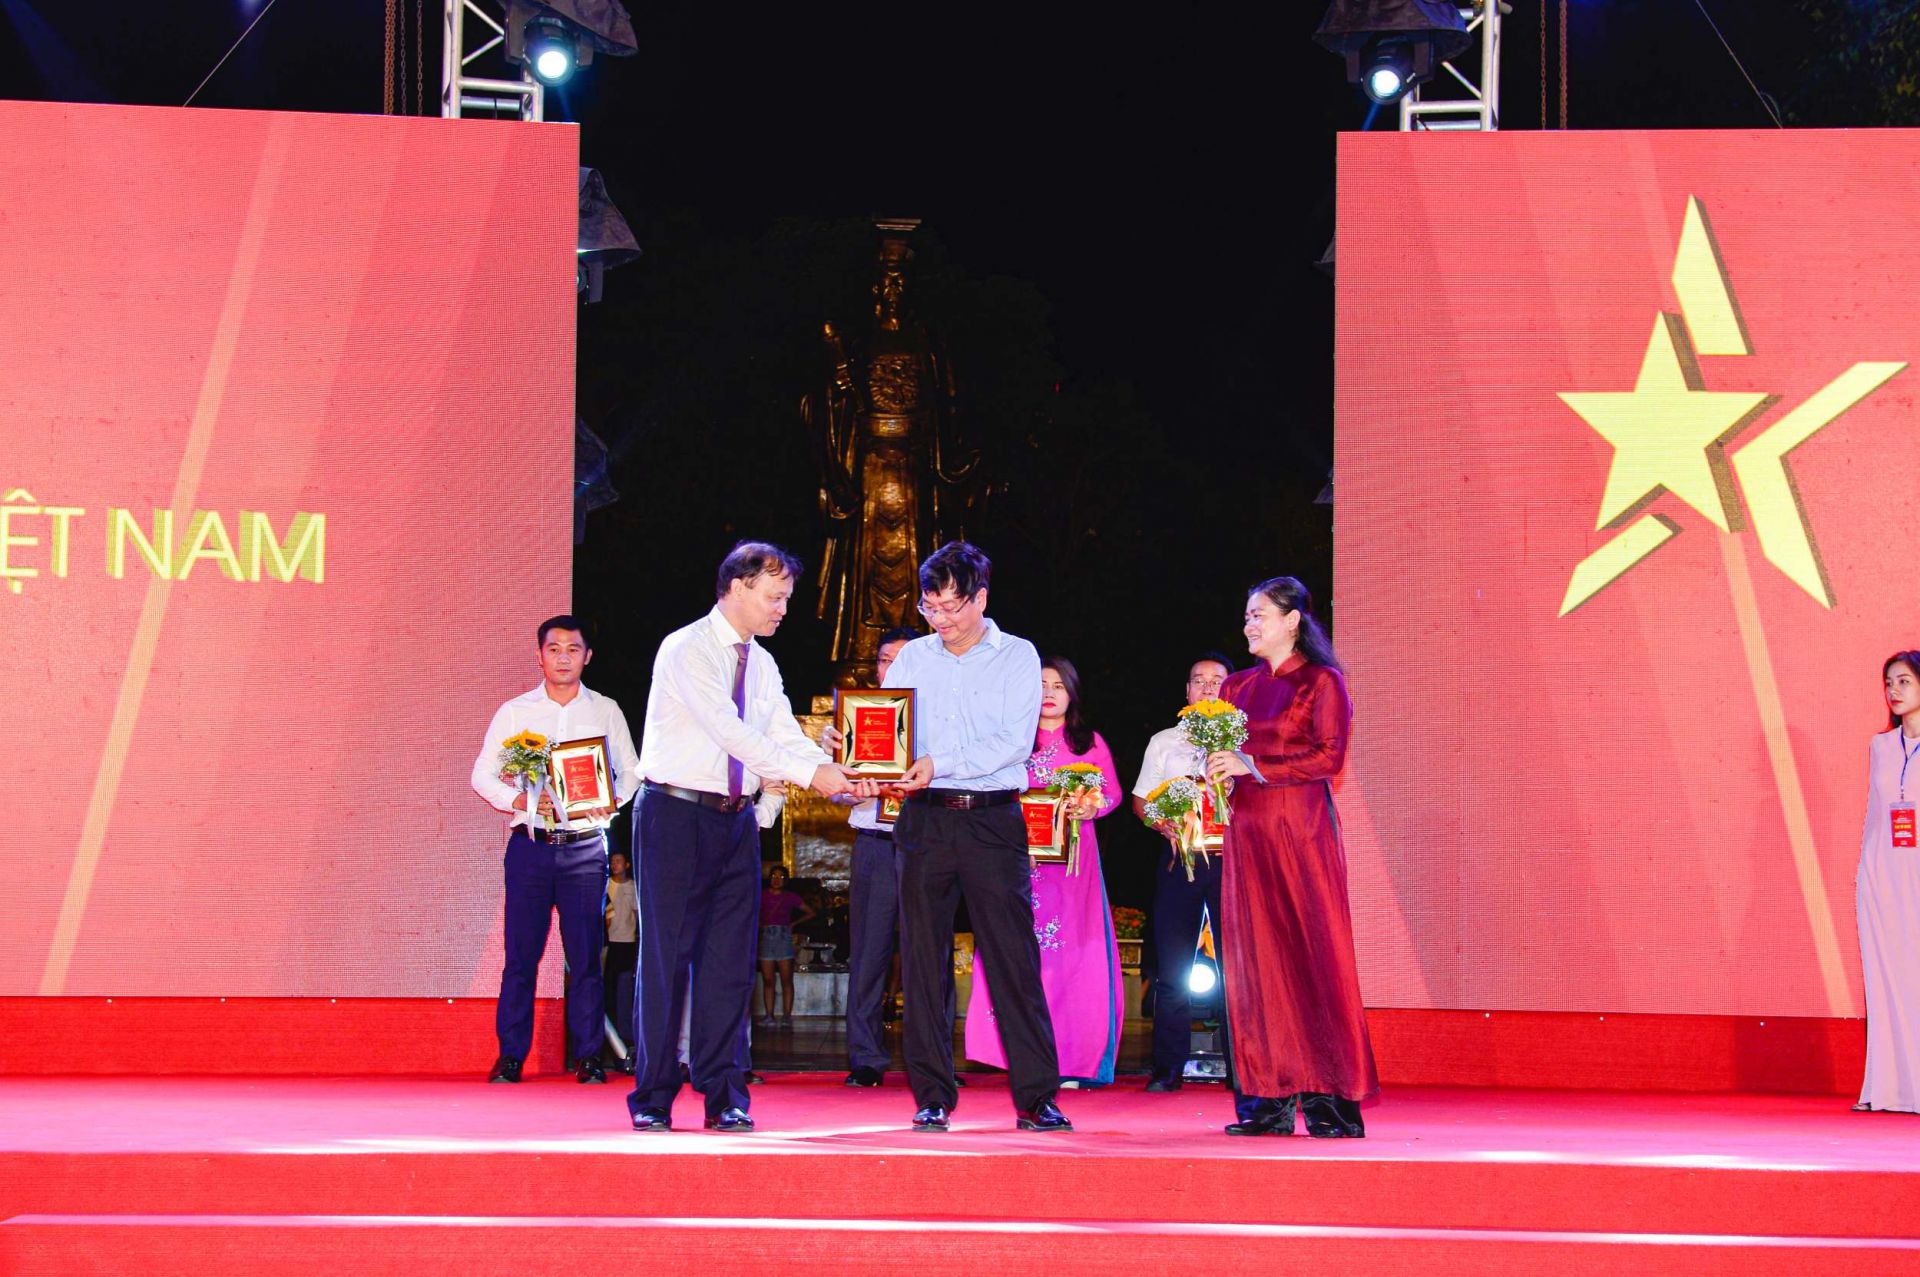 Thứ trưởng Bộ Công Thương Đỗ Thắng Hải (trái) và Phó Chủ tịch Hội Liên hiệp Phụ nữ Việt Nam Đỗ Thị Thu Thảo (phải) trao kỷ niệm chương cho đại diện Công ty CP Phân bón Bình Điền